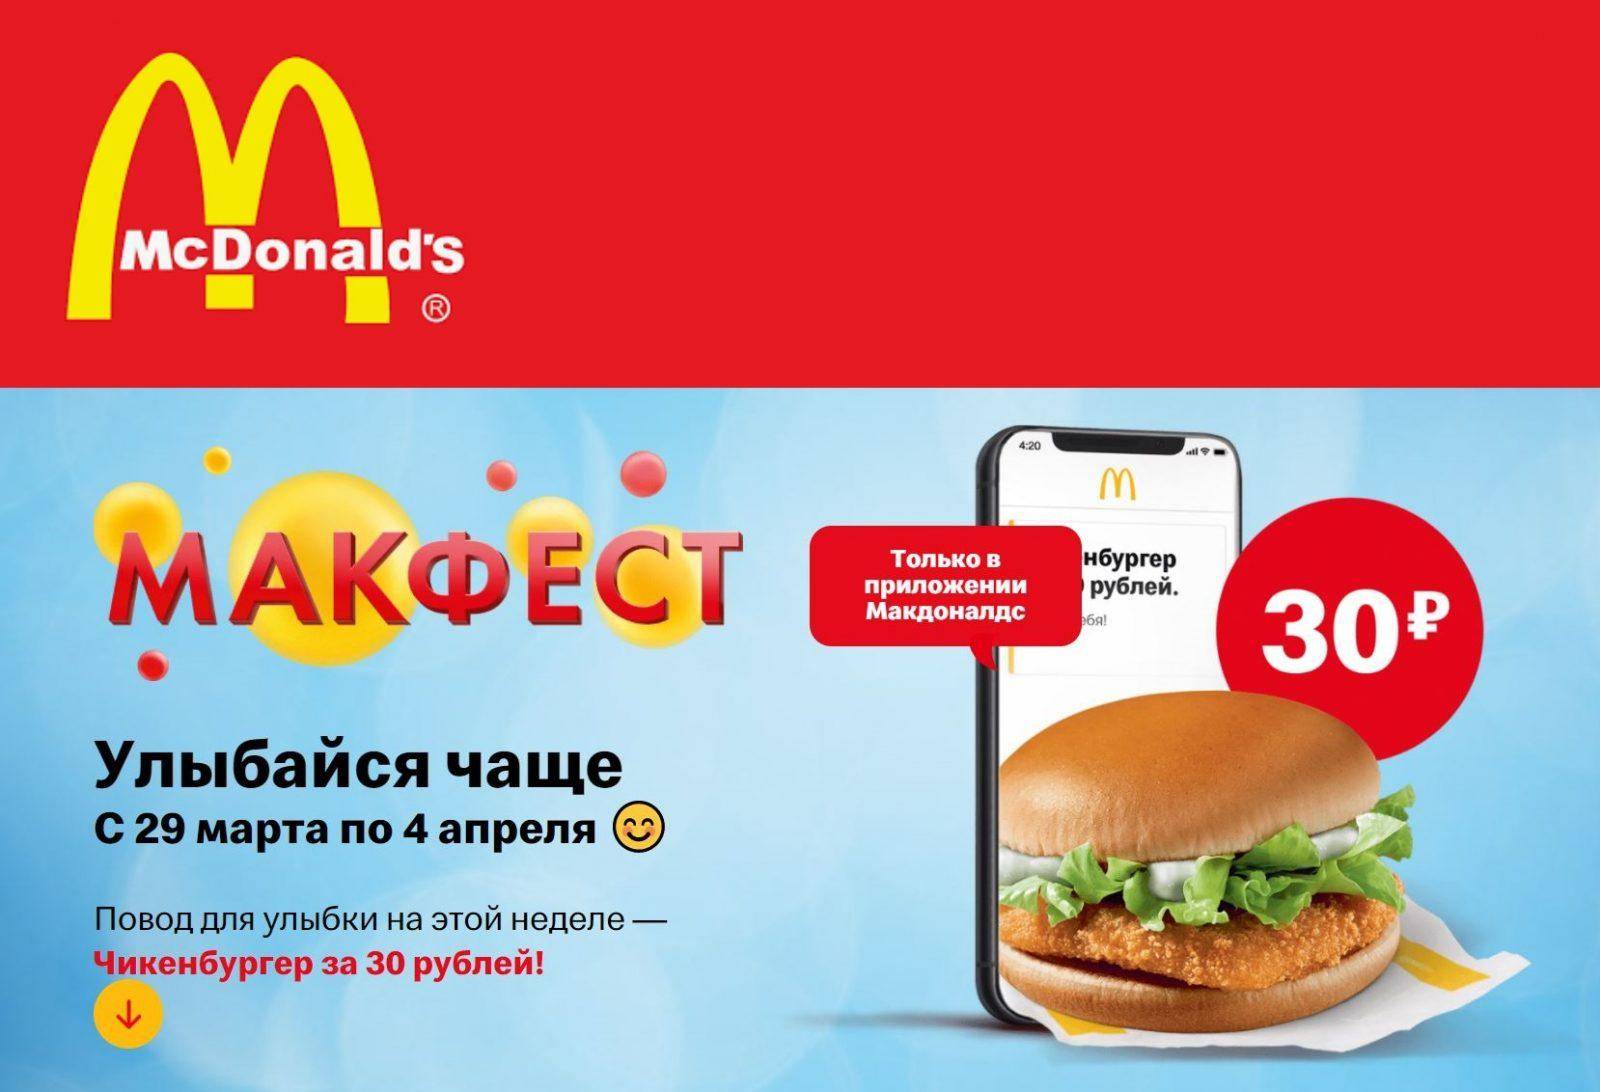 Франшиза "макдональдс" в москве: условия. как получить франшизу "макдональдс"? :: businessman.ru